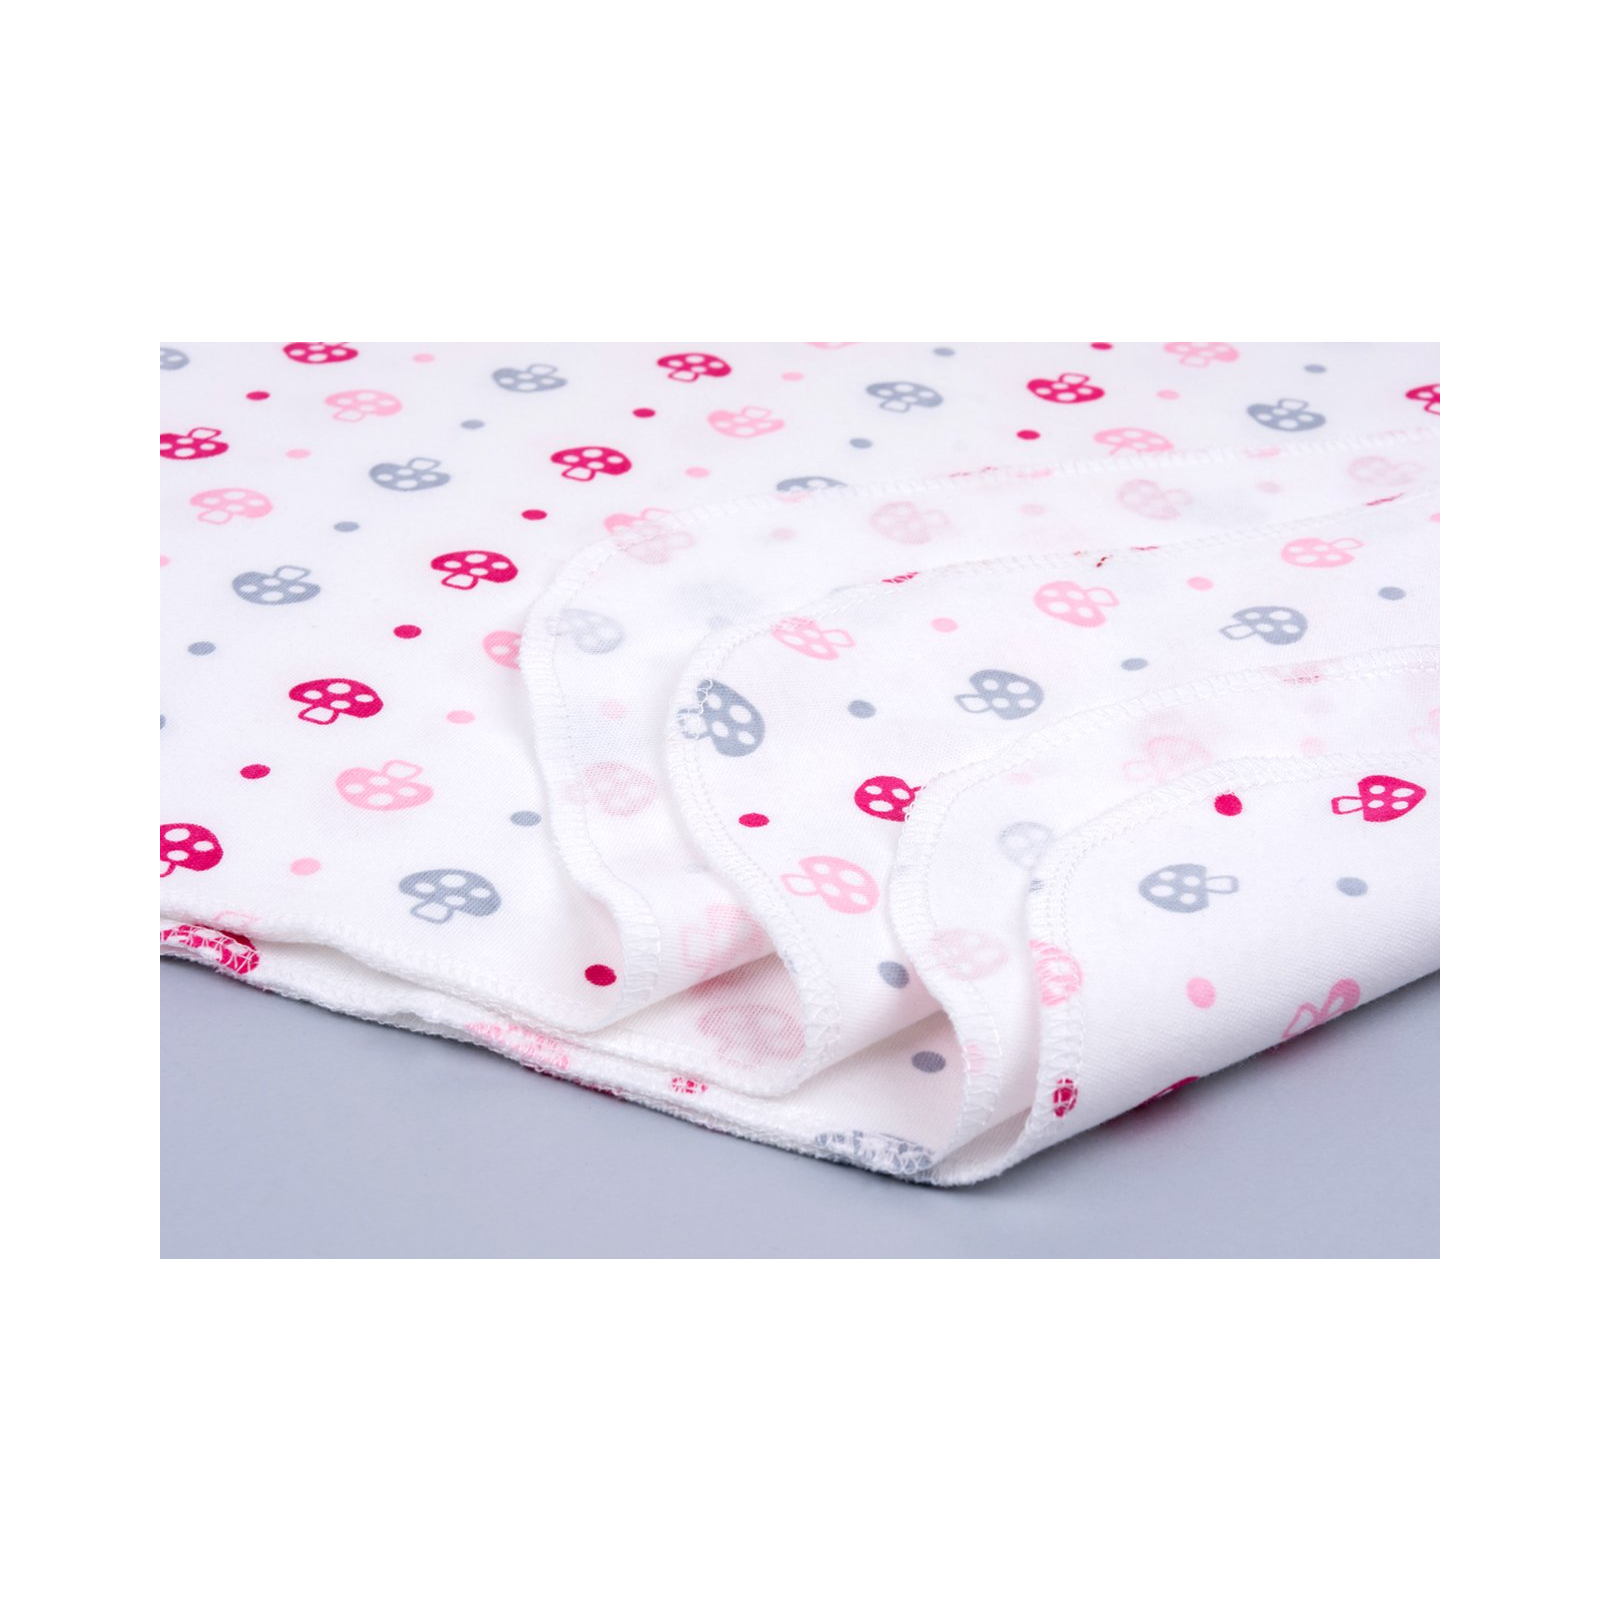 Пеленки для младенцев Интеркидс с грибочками (1142-G-pink) изображение 3